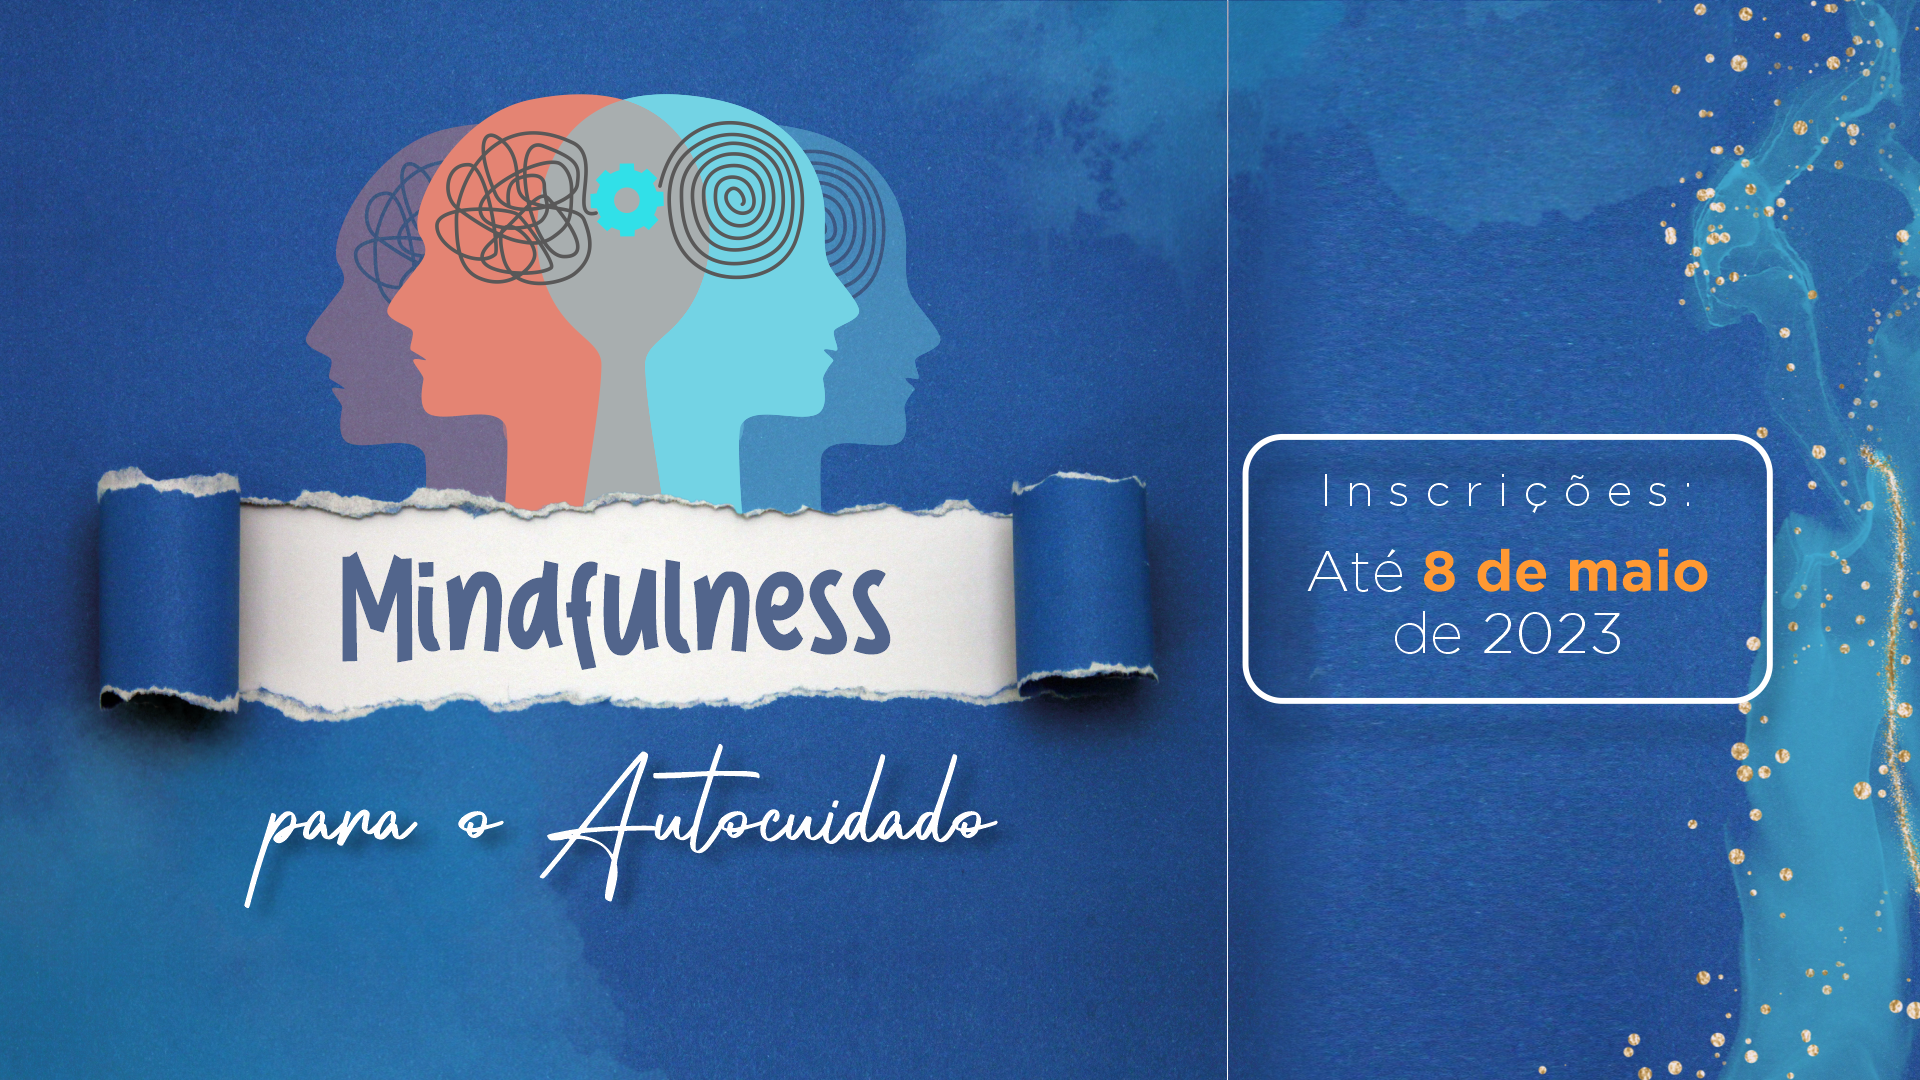 Imagem criada por um designer contendo traços em azul e o nome do curso "Mindfulness para o Autocuidado" escrito no centro.